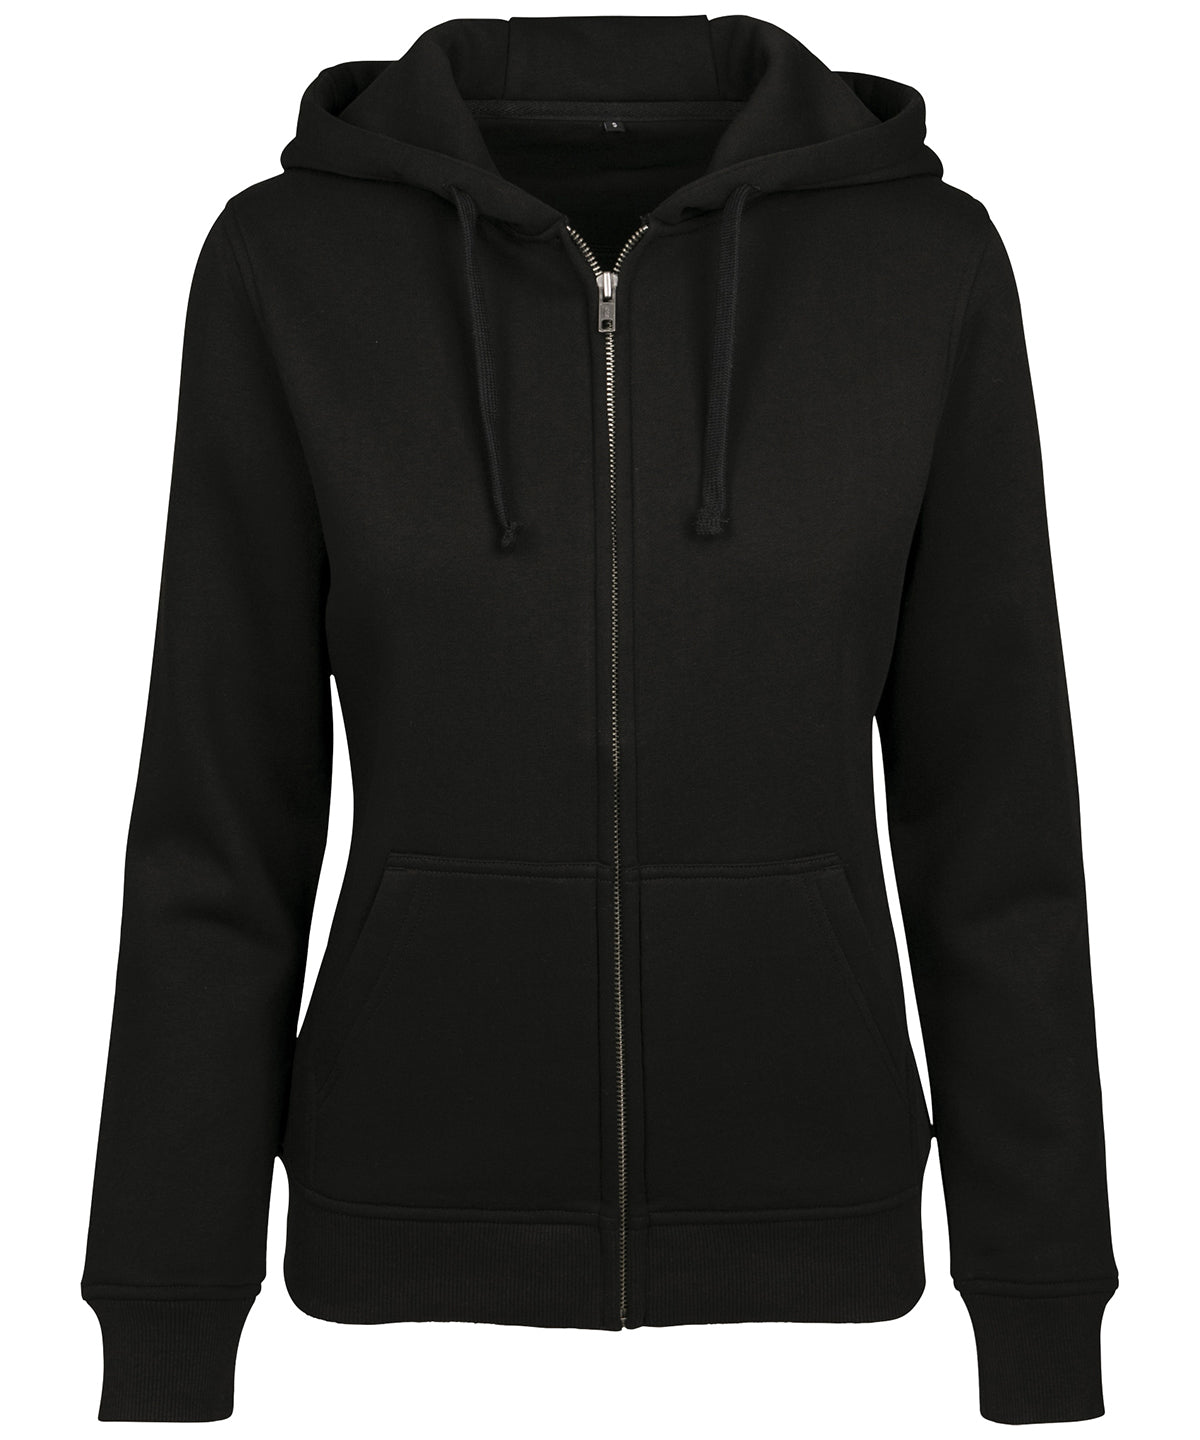 Personalised Hoodies - Black Build Your Brand Women's merch zip hoodie